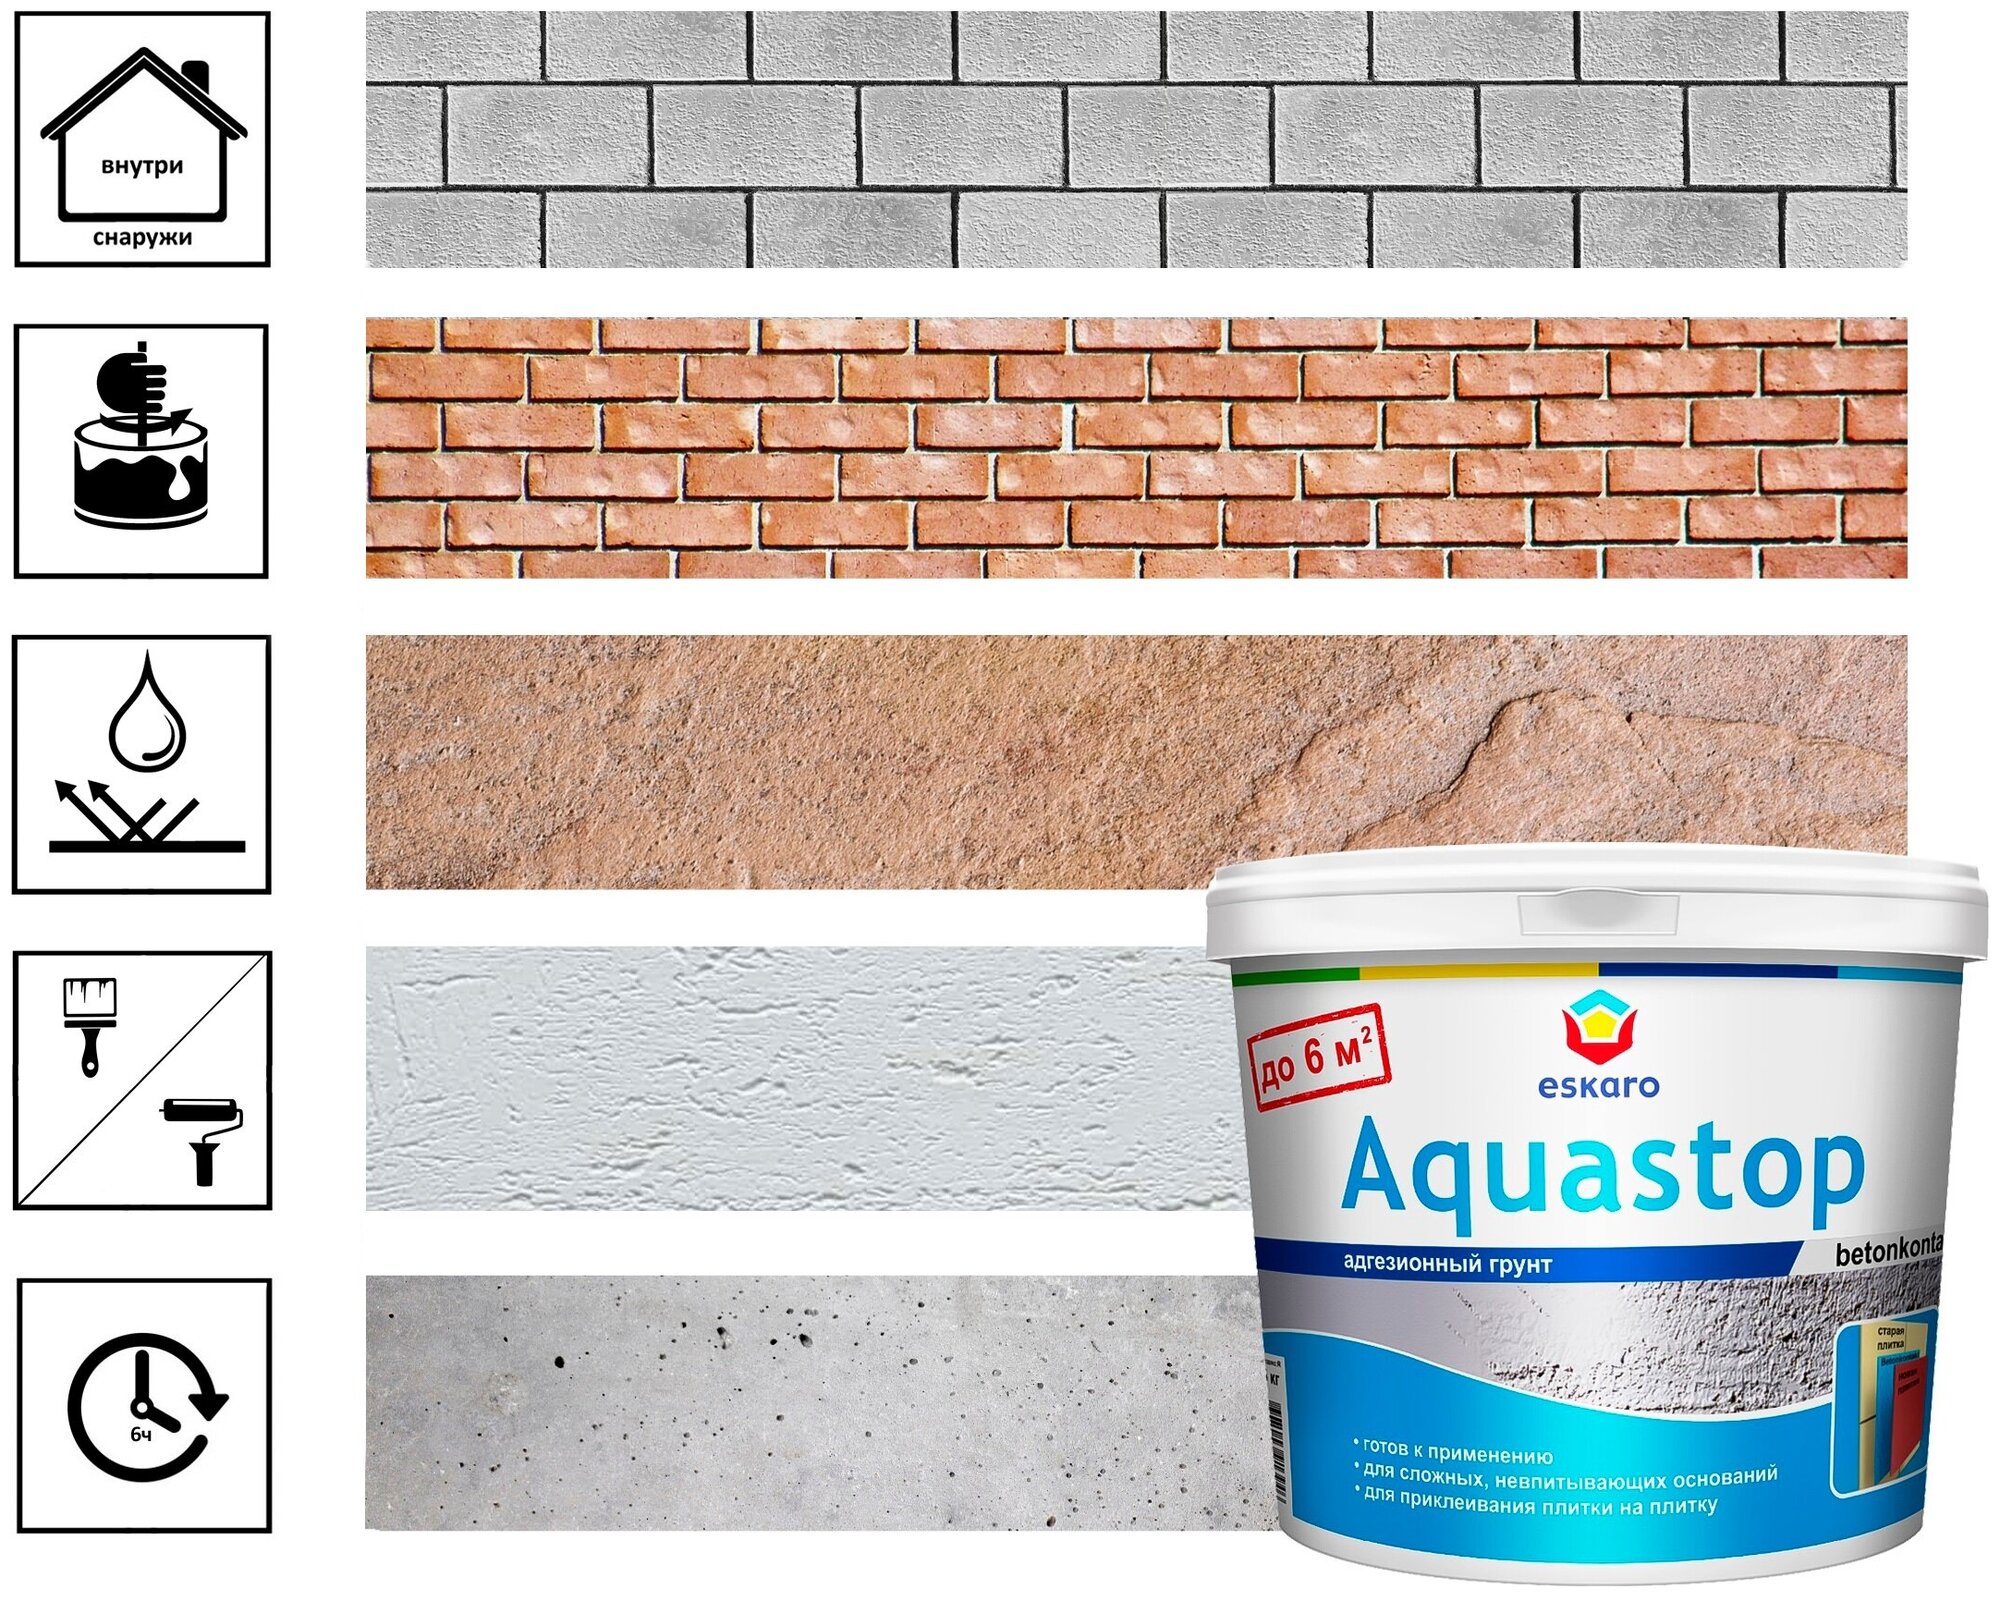 Грунт адгезионный eskaro aquastop betoncontaсt 1,5кг, арт.13946